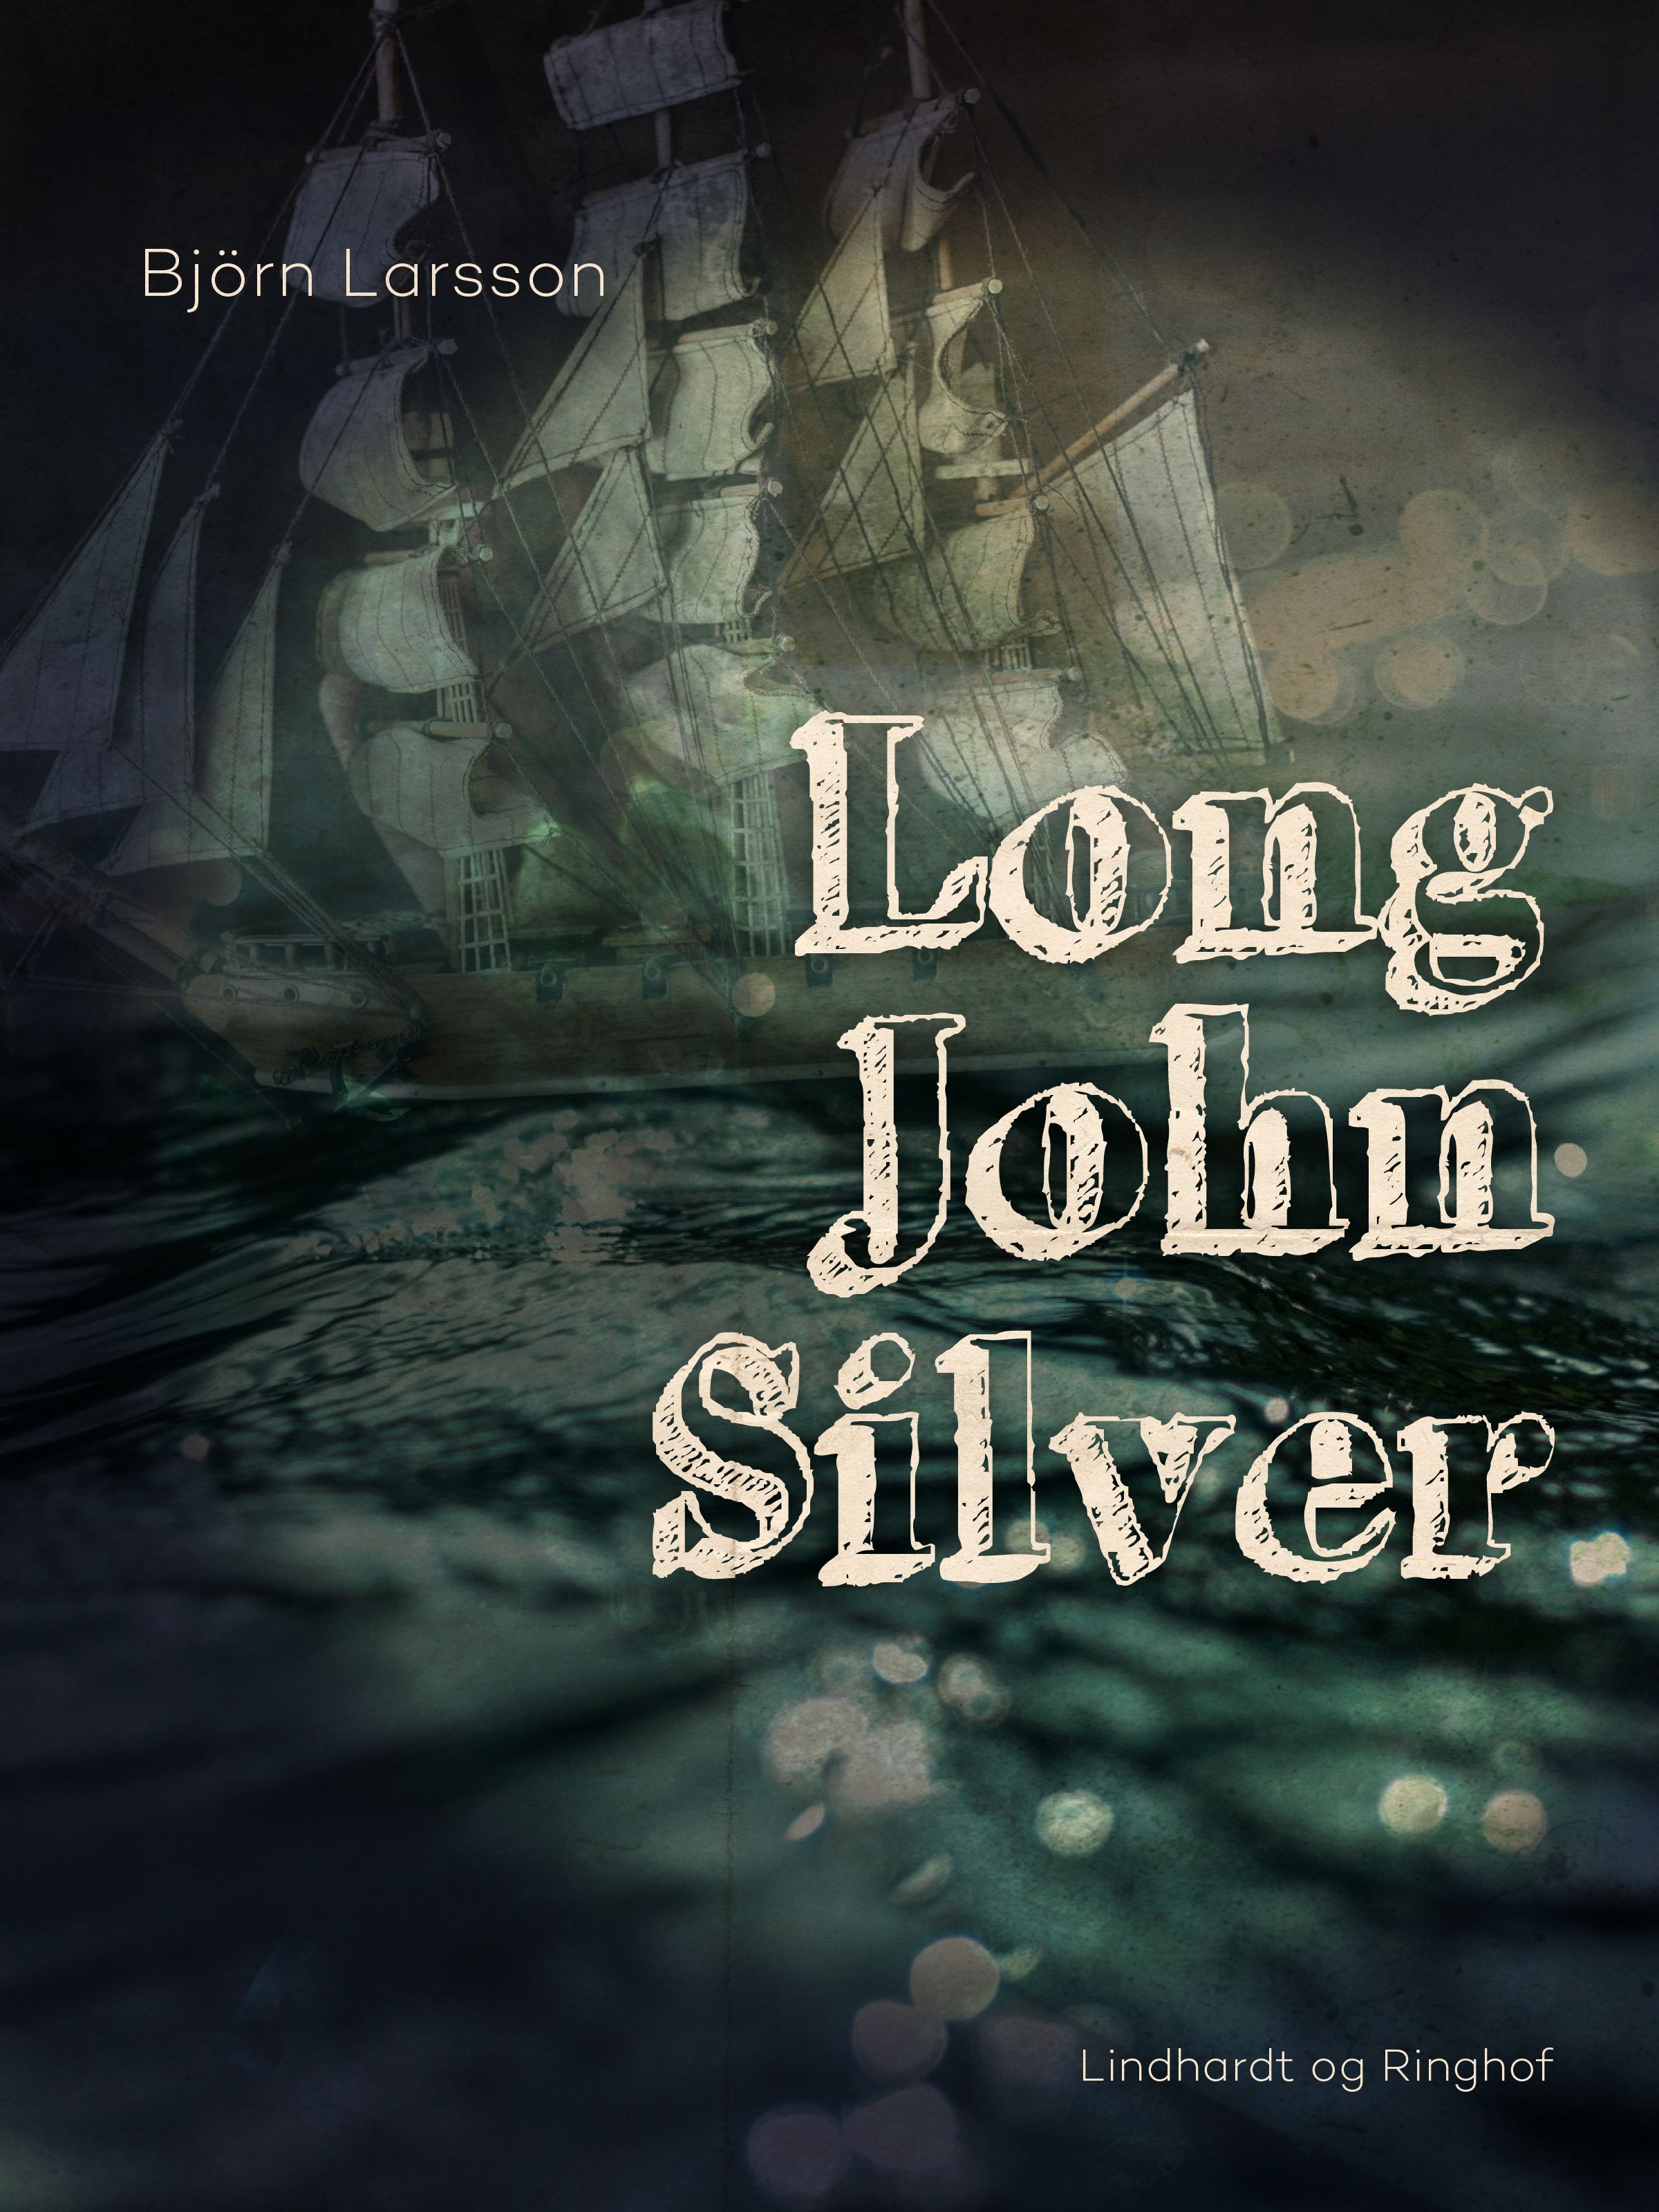 Long John Silver, e-bok av Björn Larsson